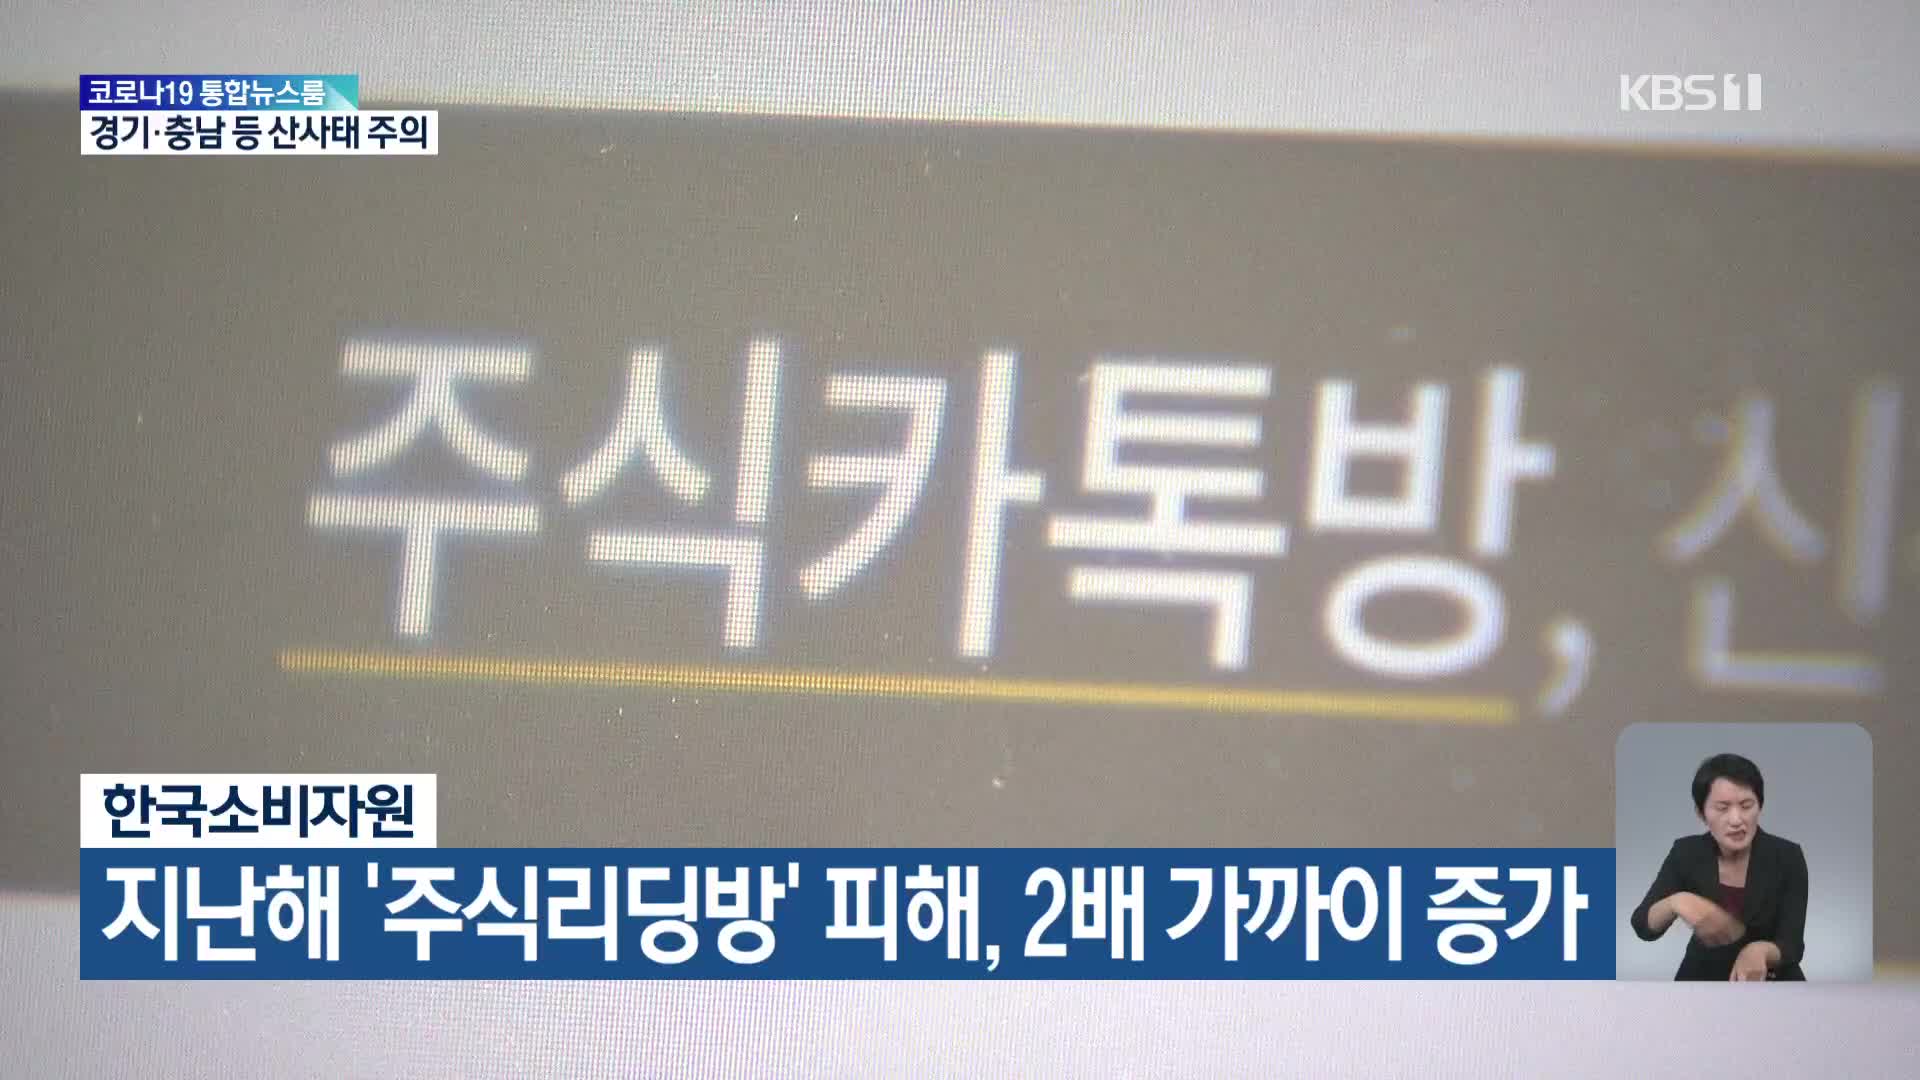 한국소비자원, 지난해 ‘주식리딩방’ 피해 2배 가까이 증가